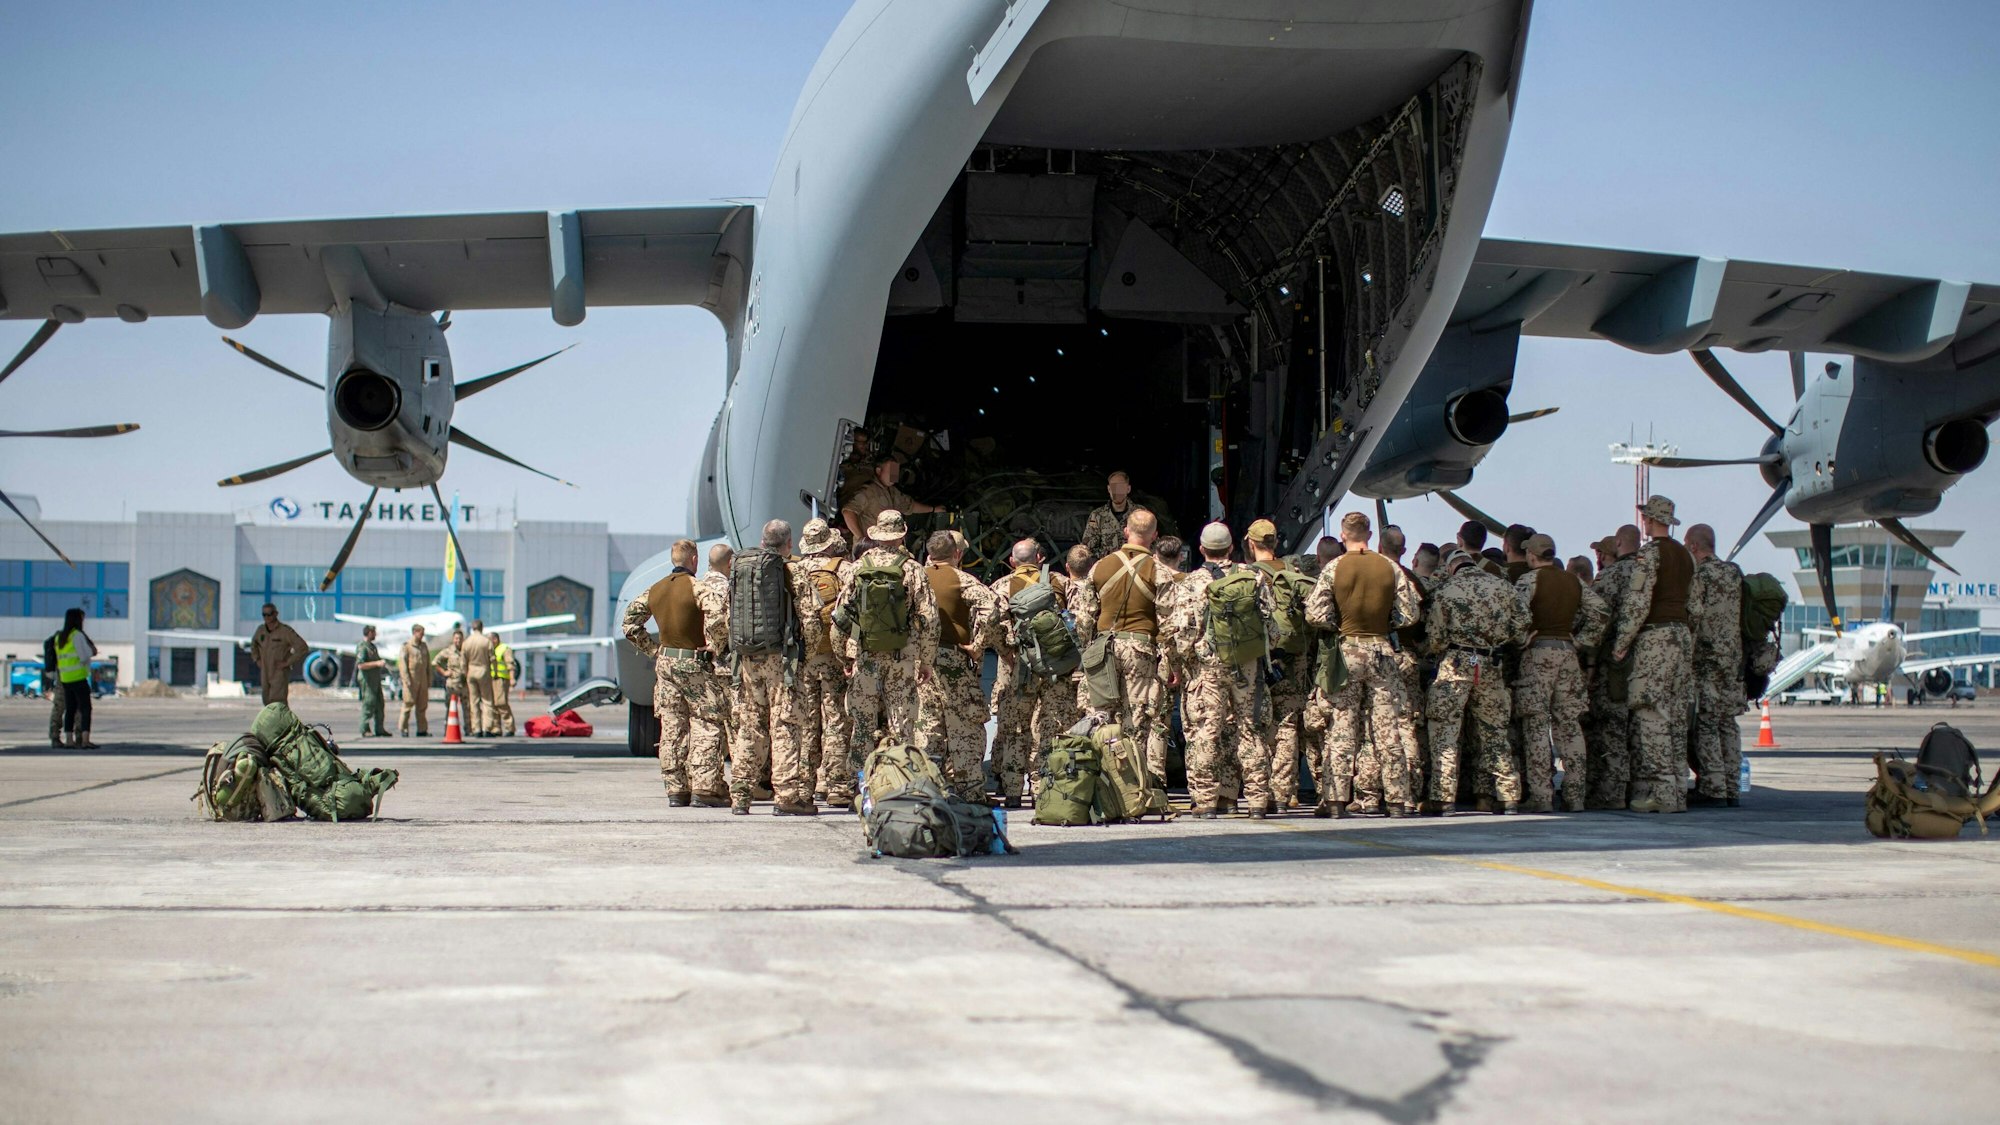 Soldaten stehen am 17. August 2021 auf dem Rollfeld des Flughafens Tashkent in Usbekistan